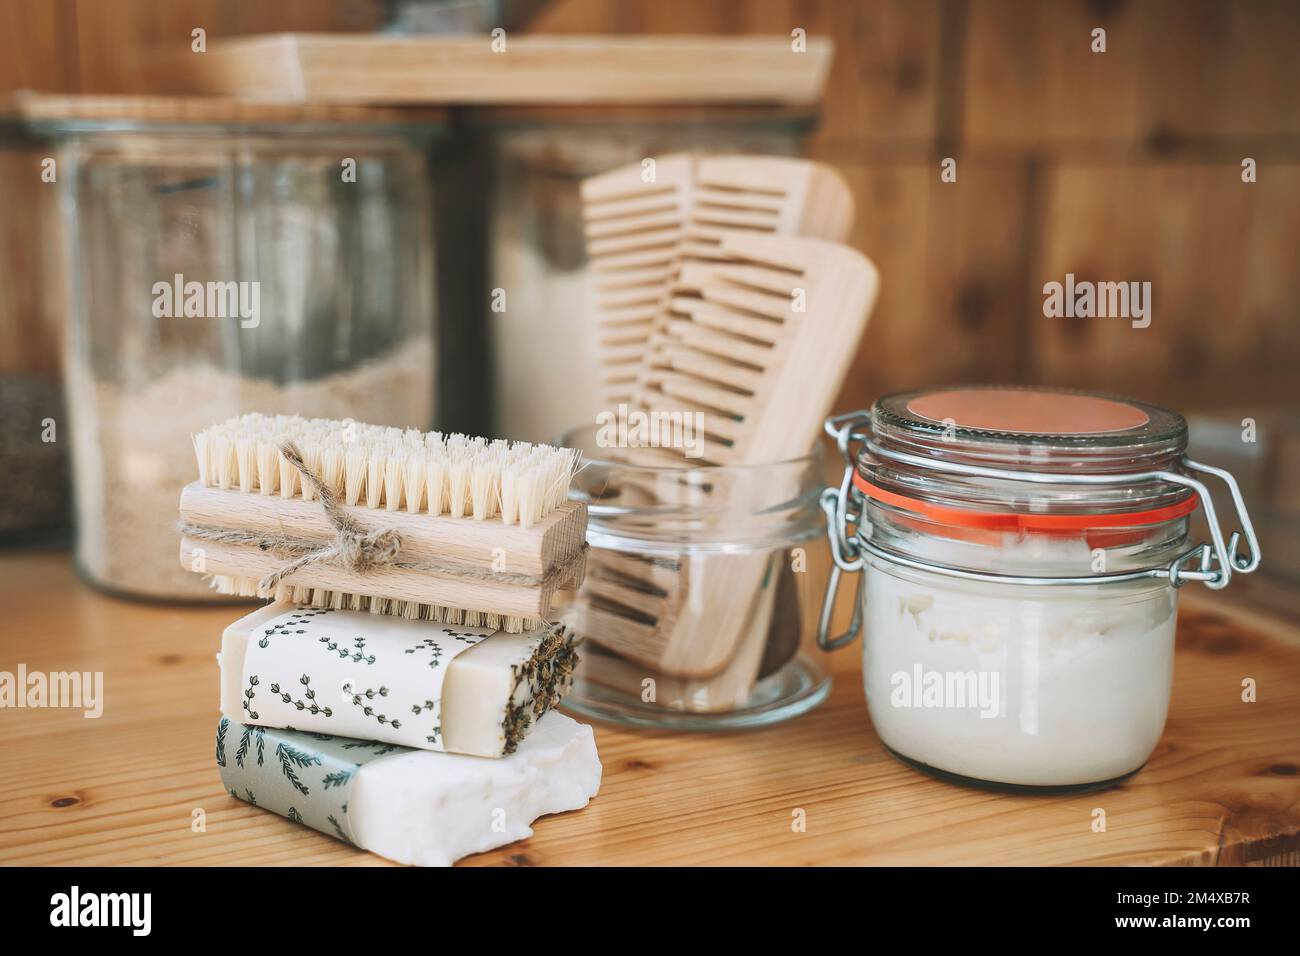 Ein Stapel Seifenleisten und eine Scheuerbürste mit Kammaufsätzen und einem Becher auf dem Tisch Stockfoto